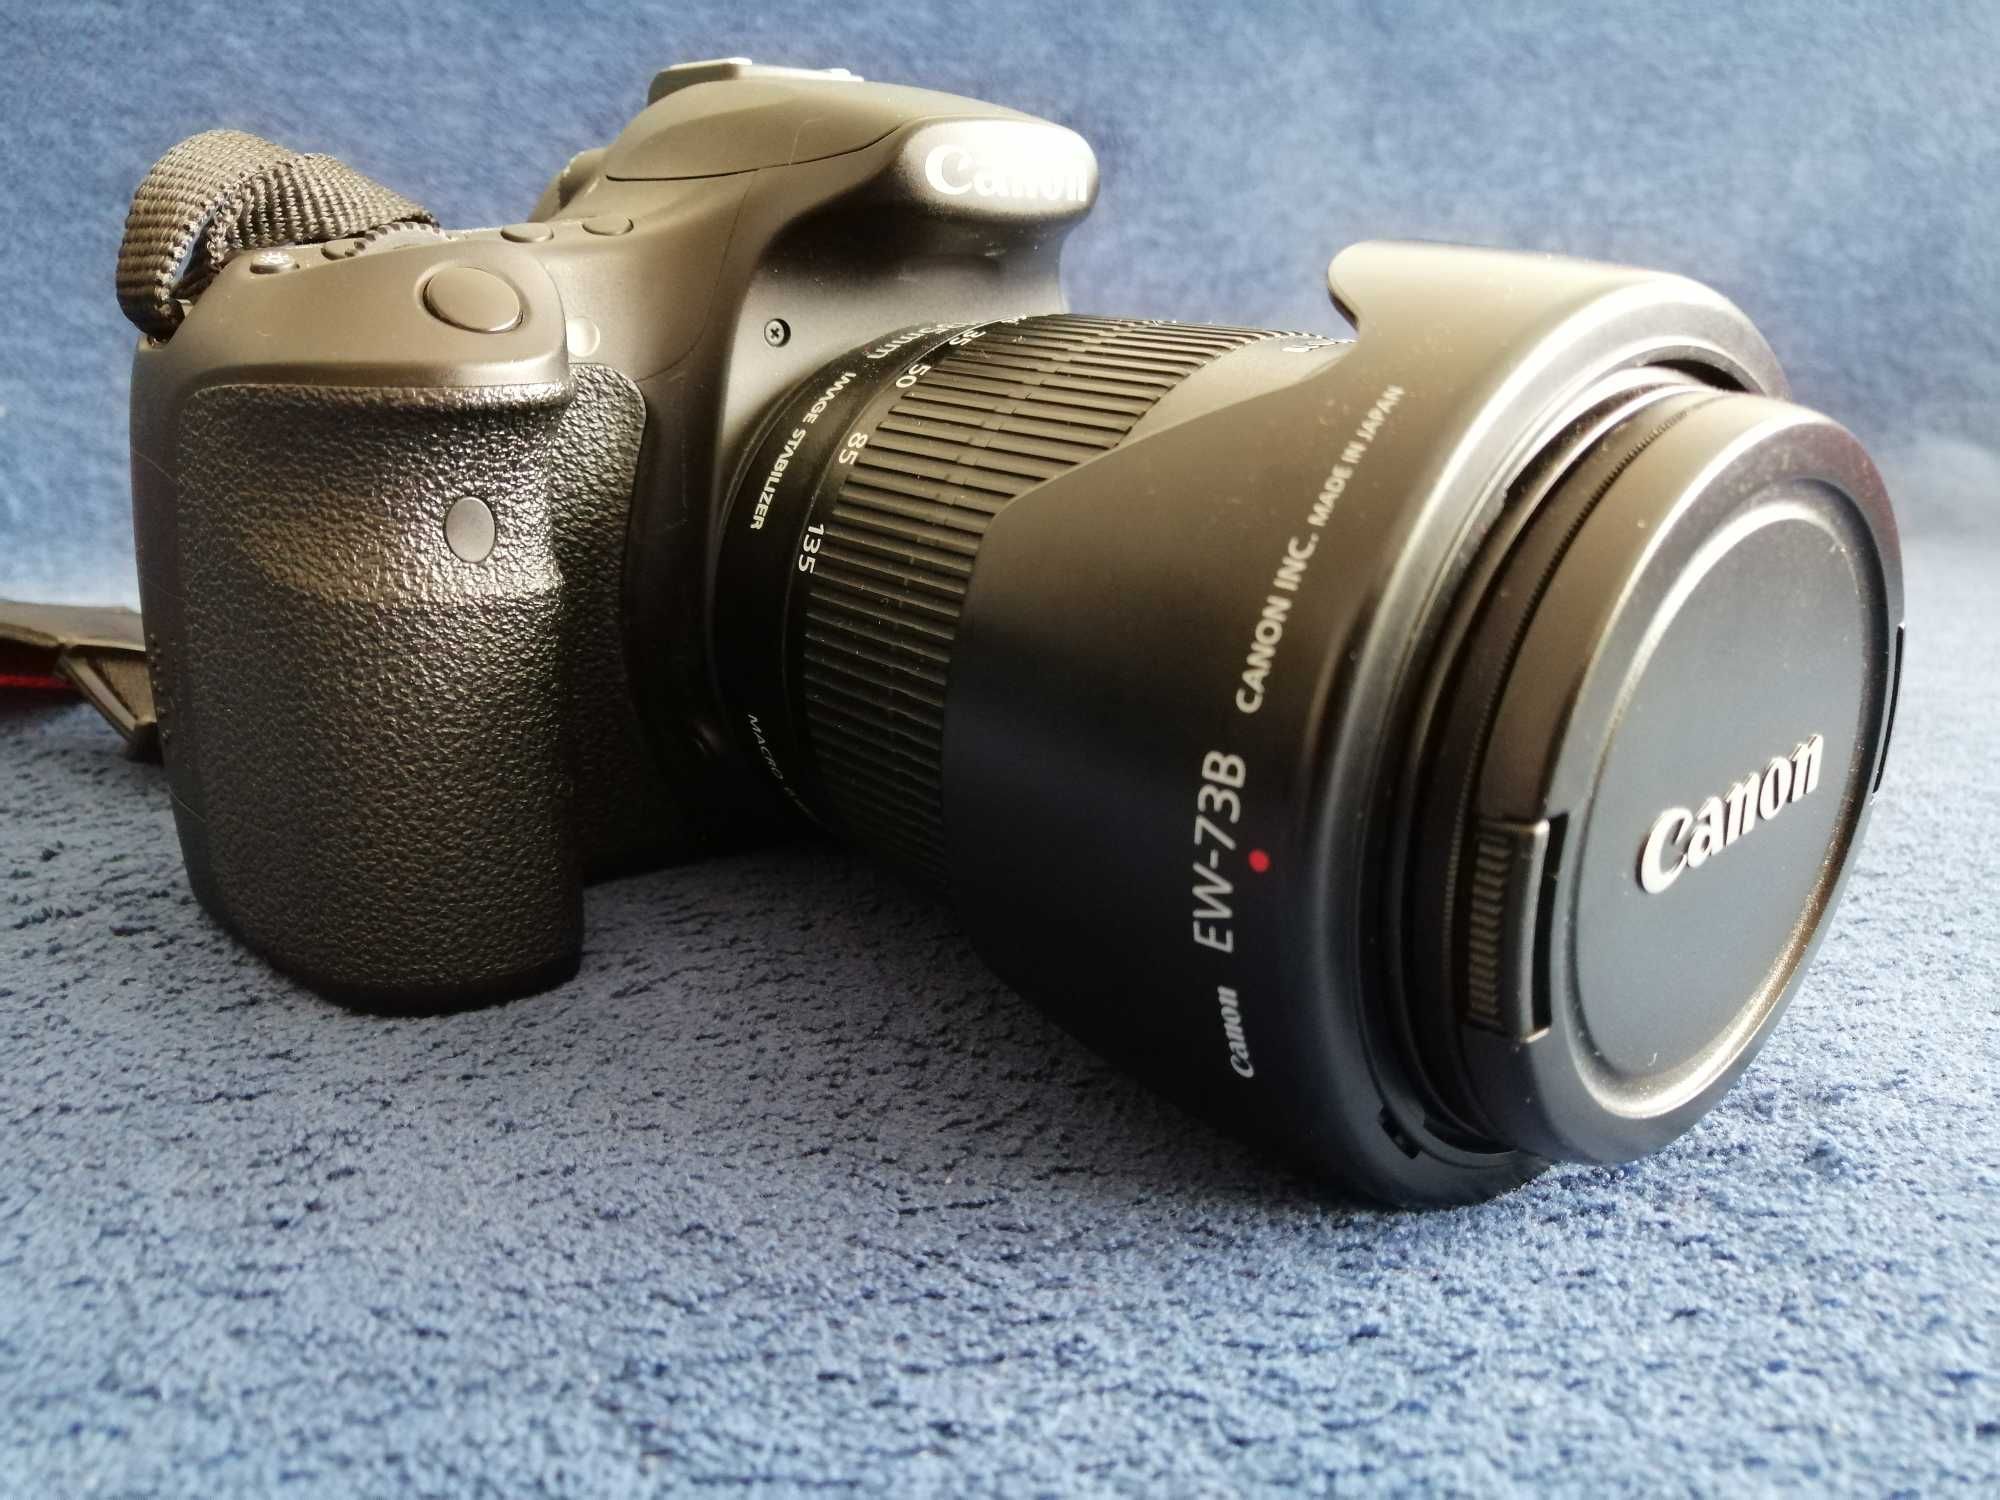 Canon 60D - DSLR